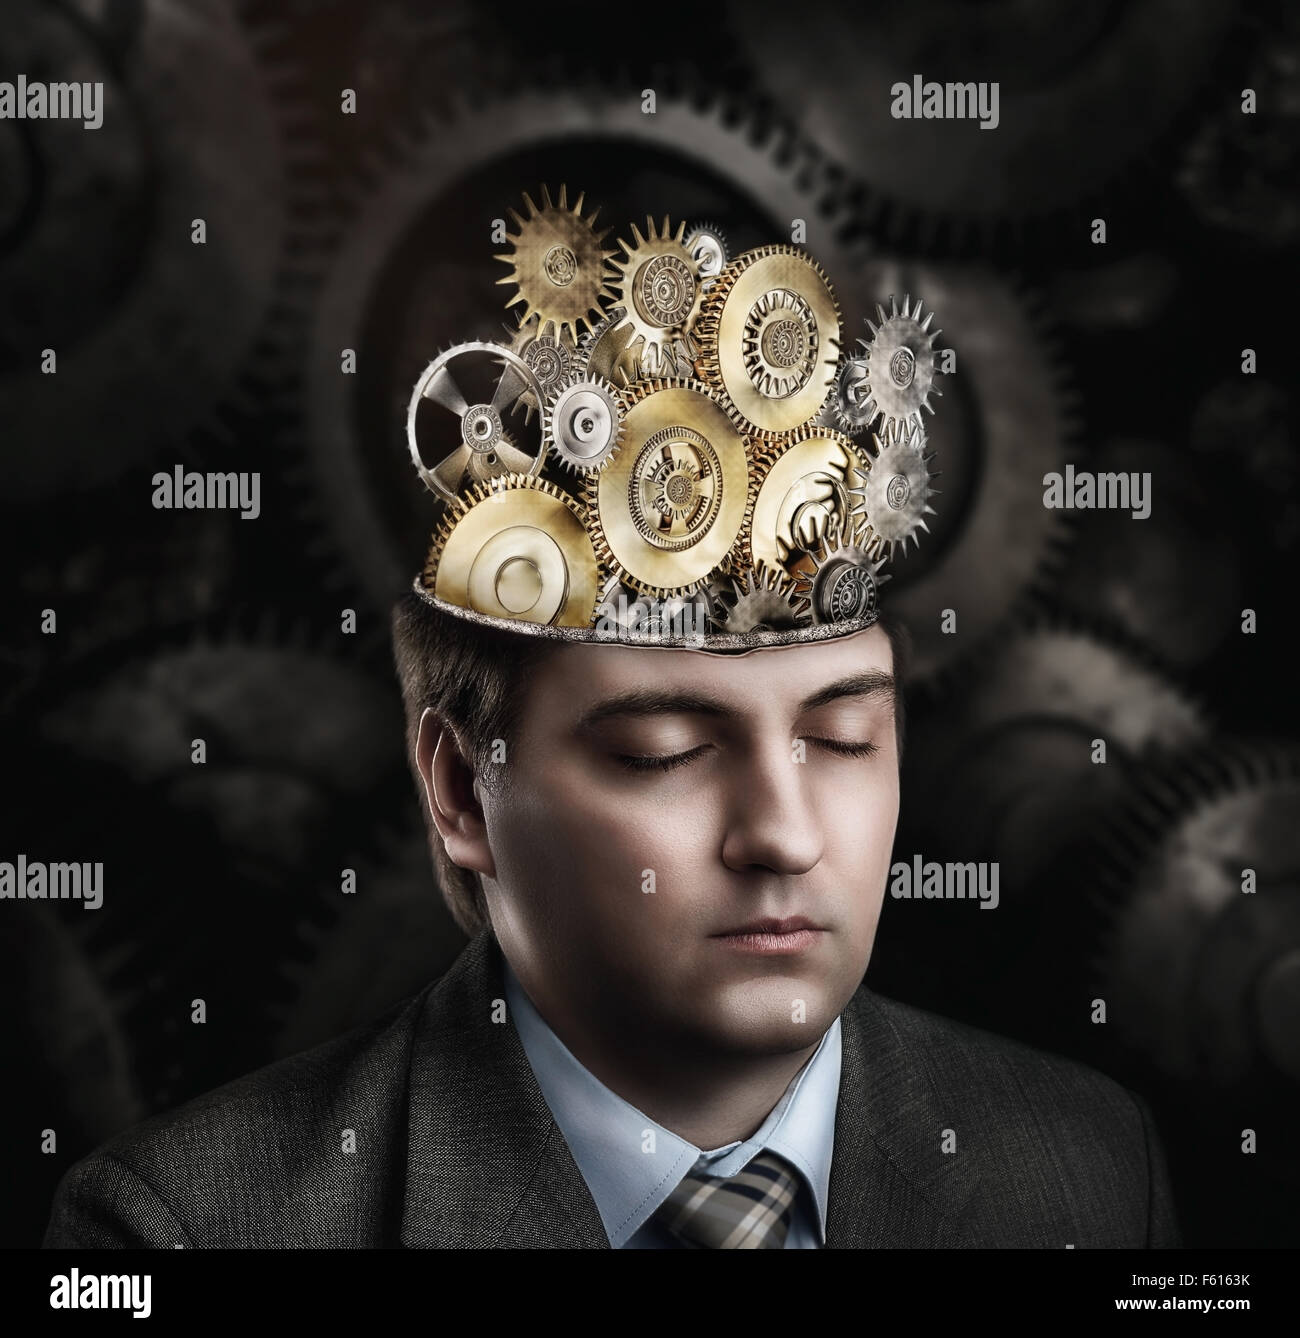 Man with cogwheel mechanism in his brain Stock Photo